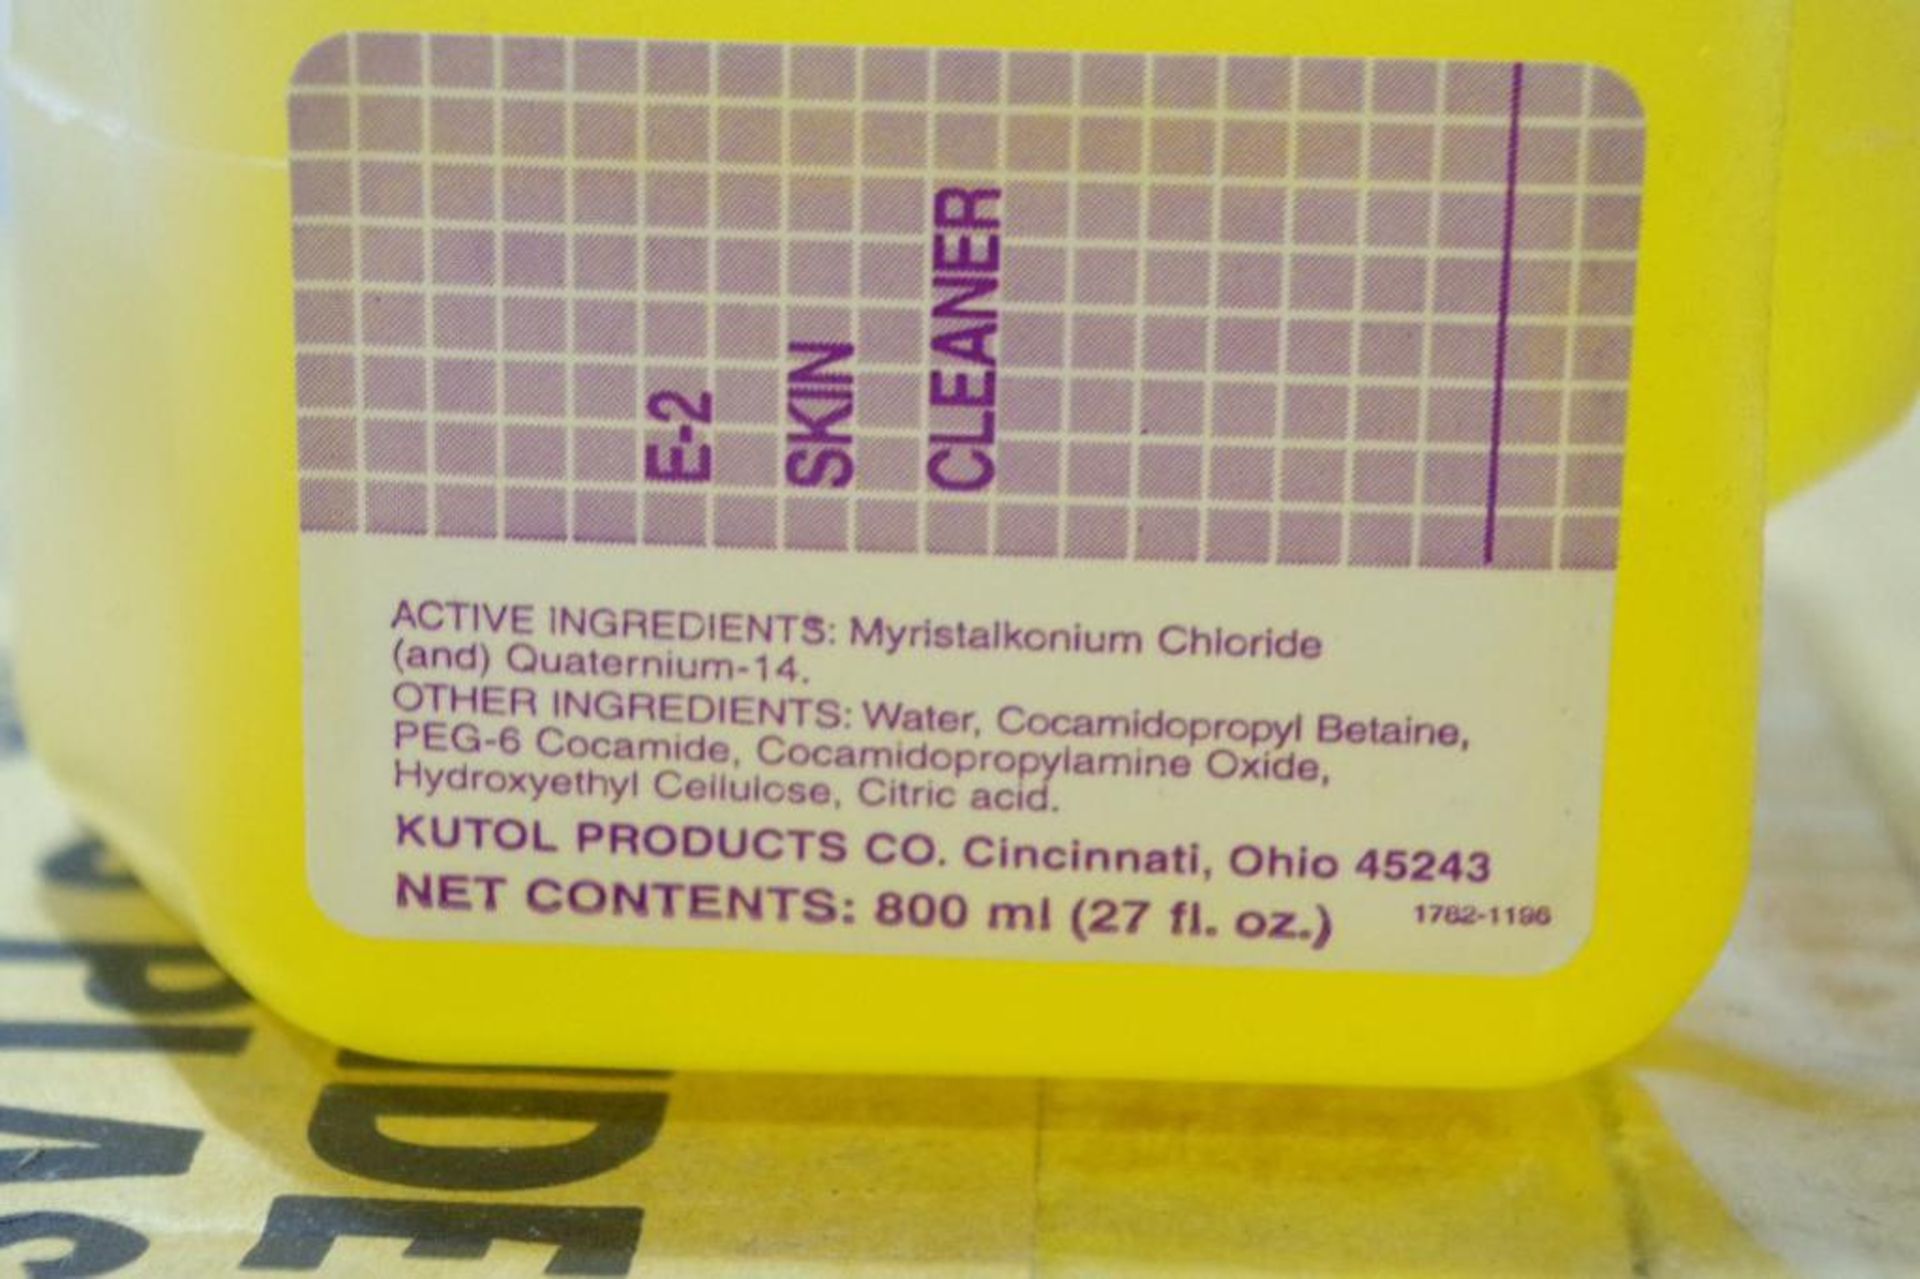 (2) Cases HSC E-2 Skin Cleanser Sanitizer 800 ml. Bottles (2 Cases of 12 Bottles) - Image 4 of 4